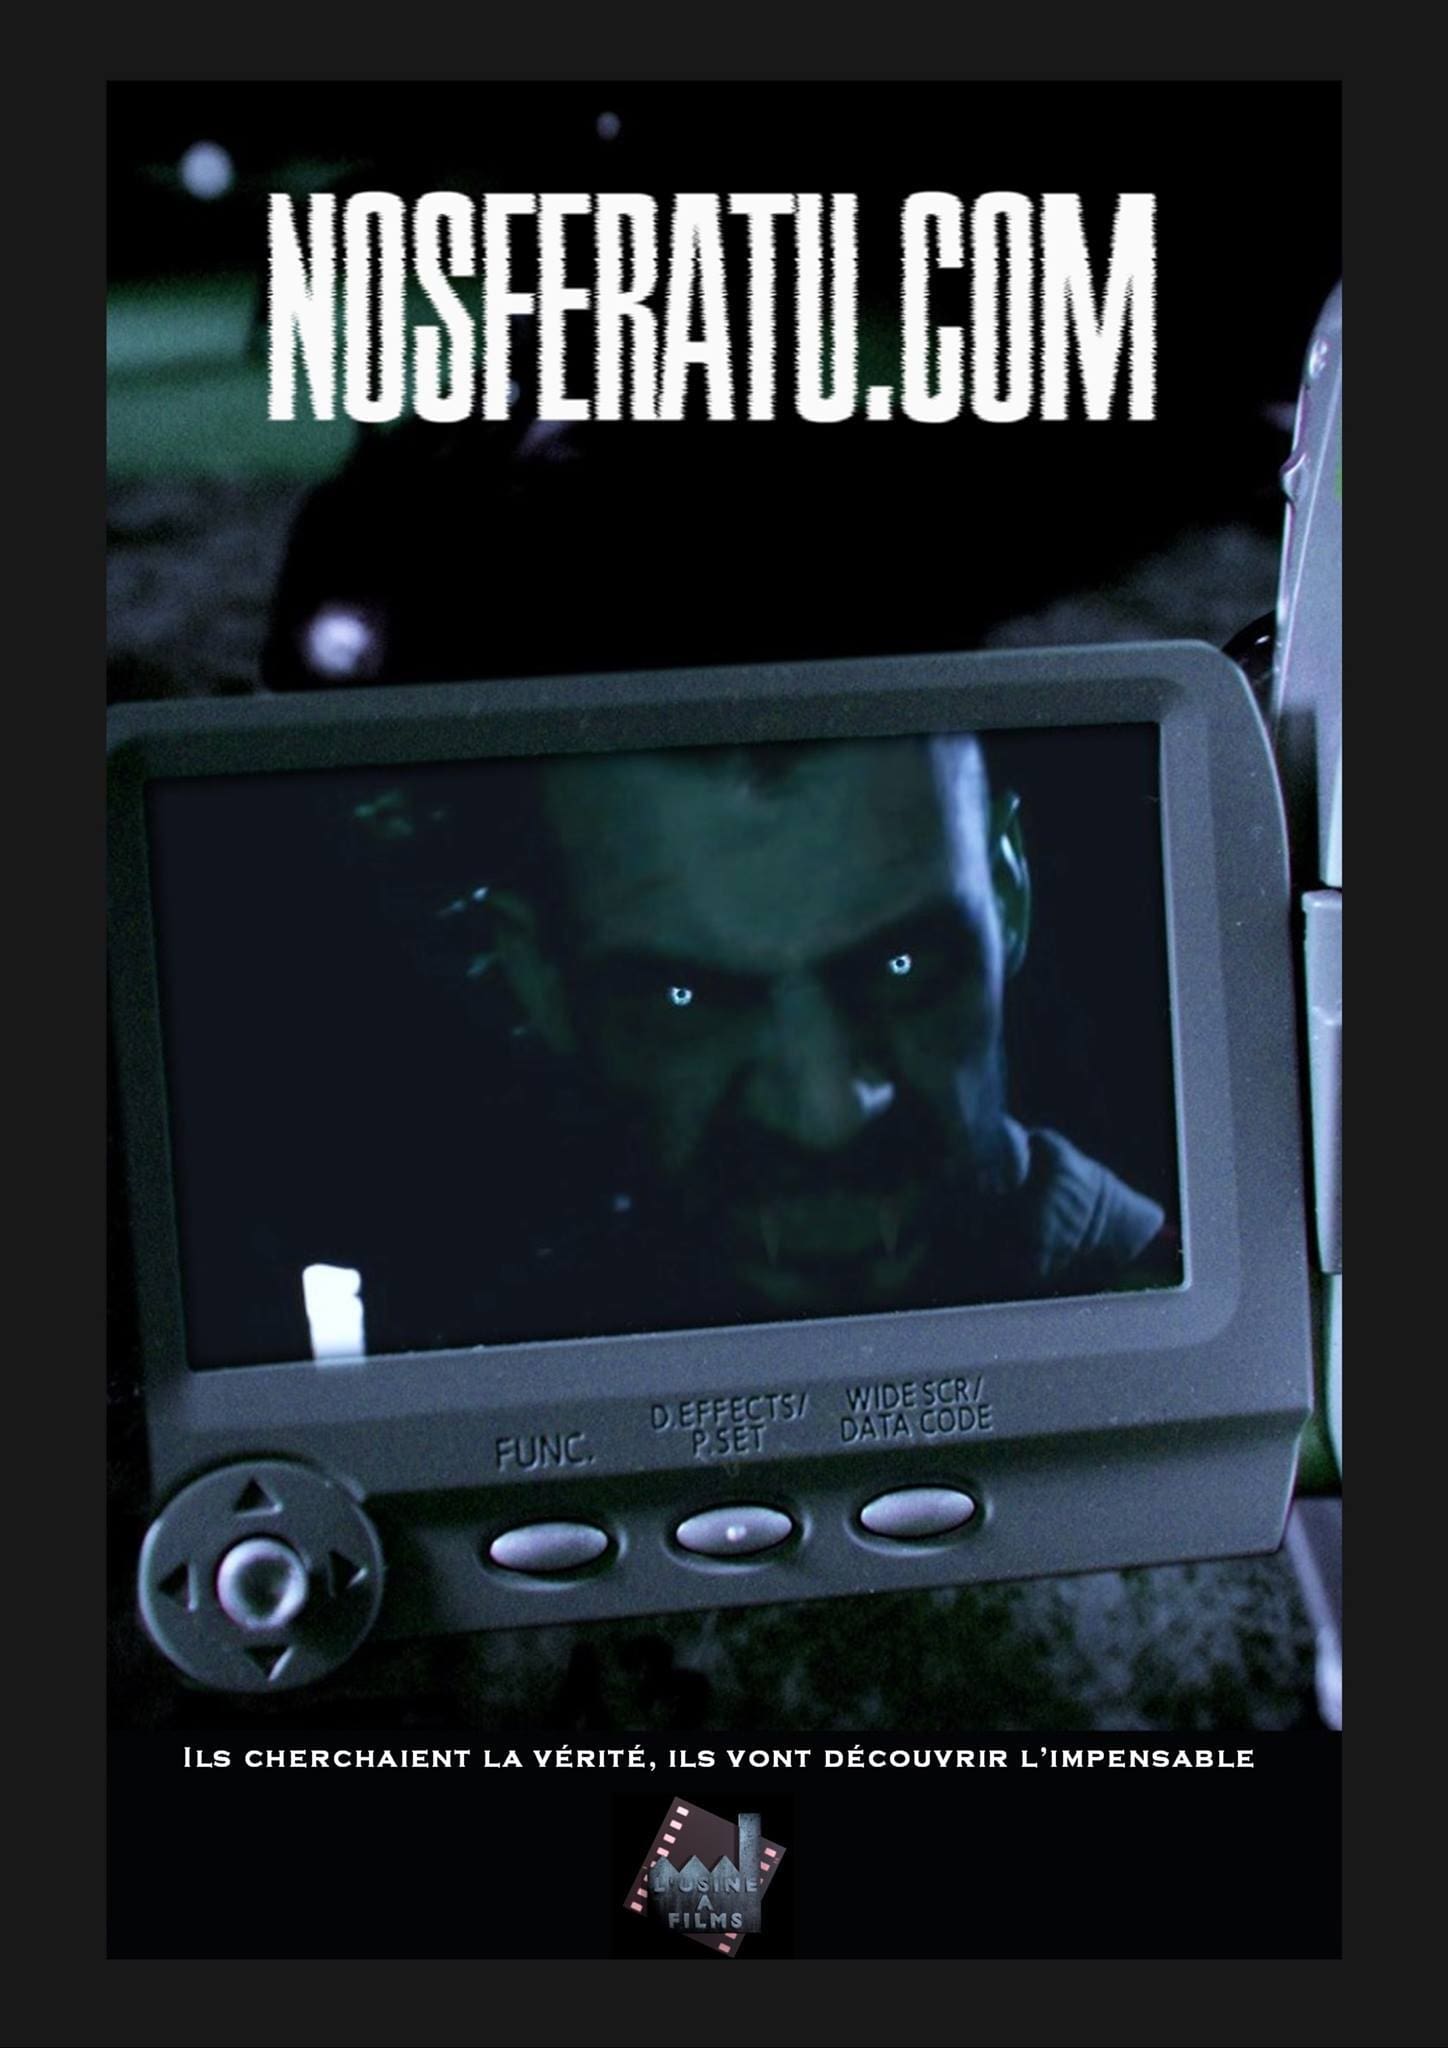 Nosferatu.com